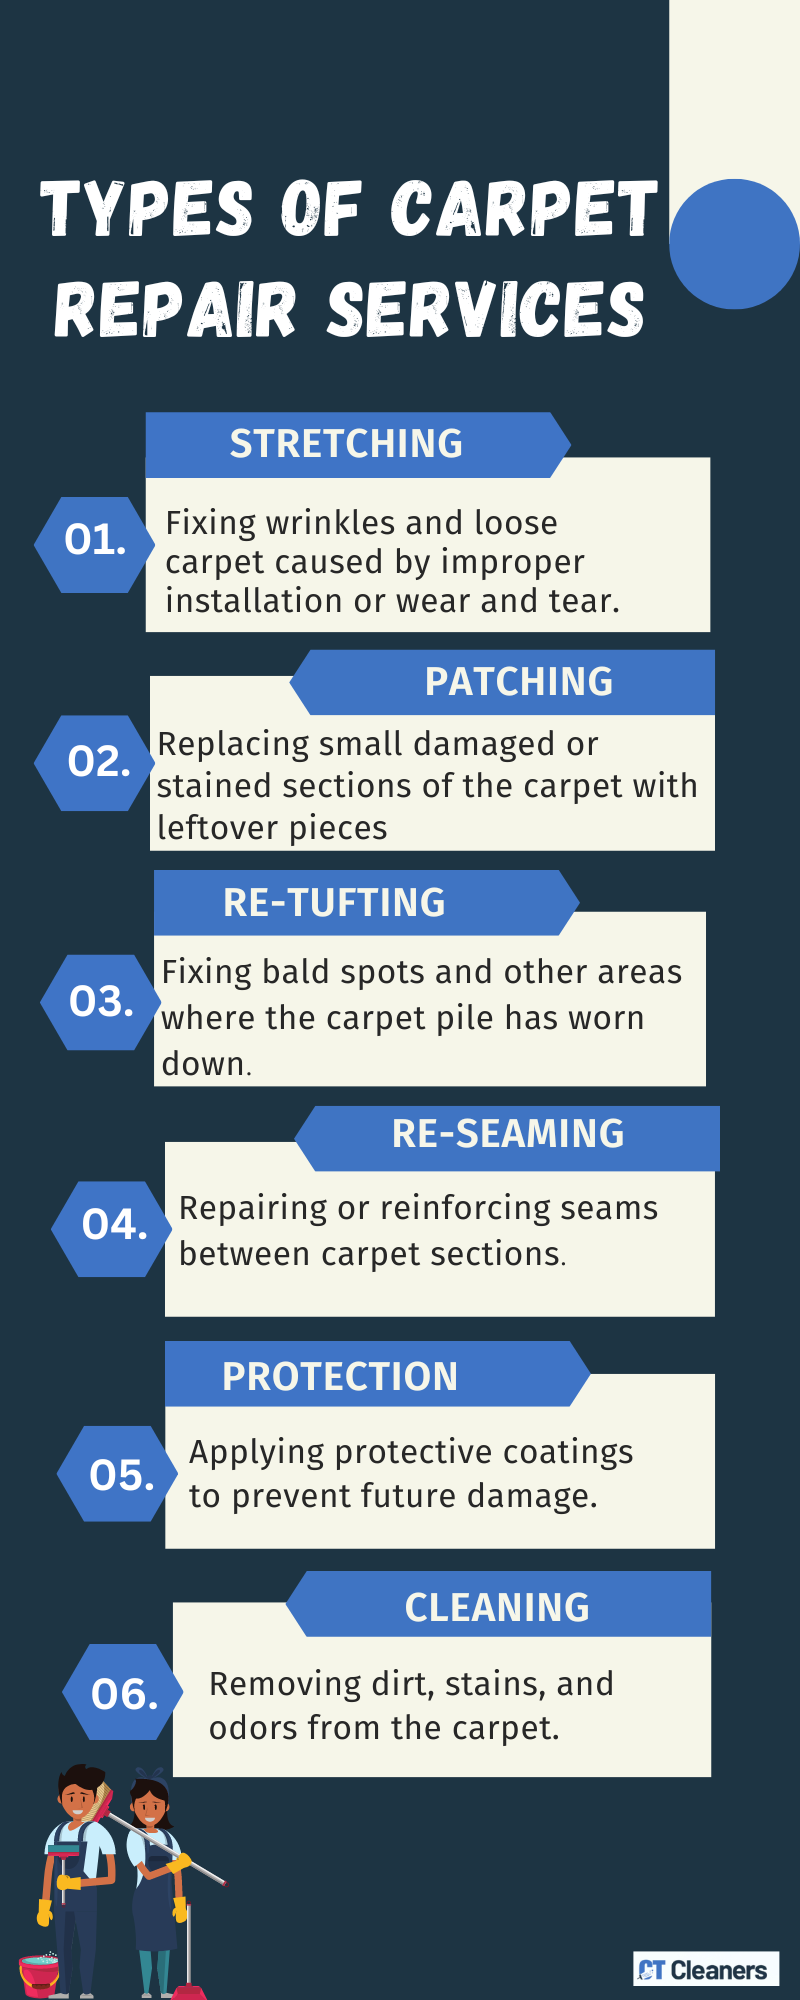 Types of Carpet Repair Services